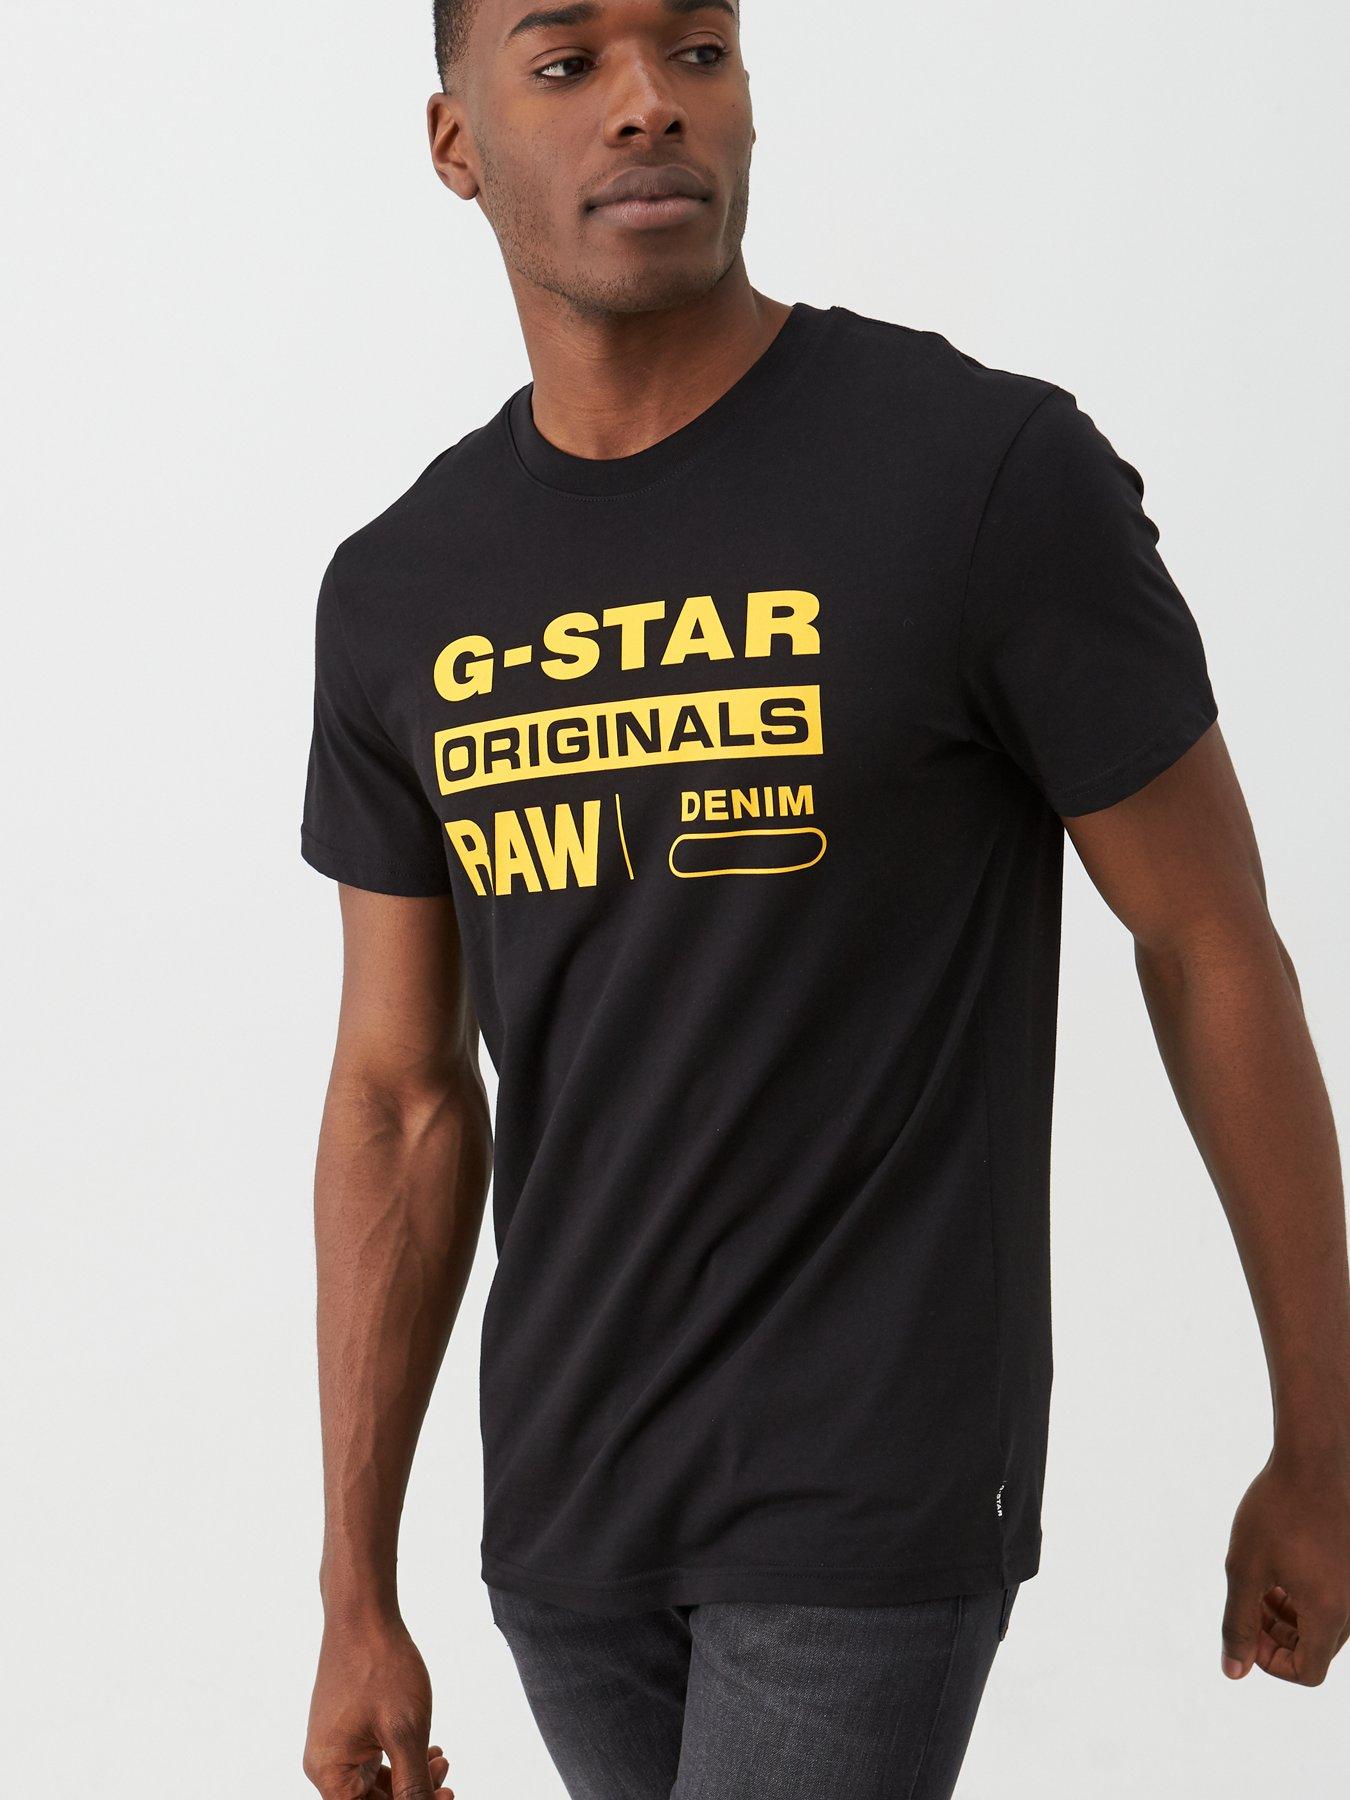 g star clothing uk